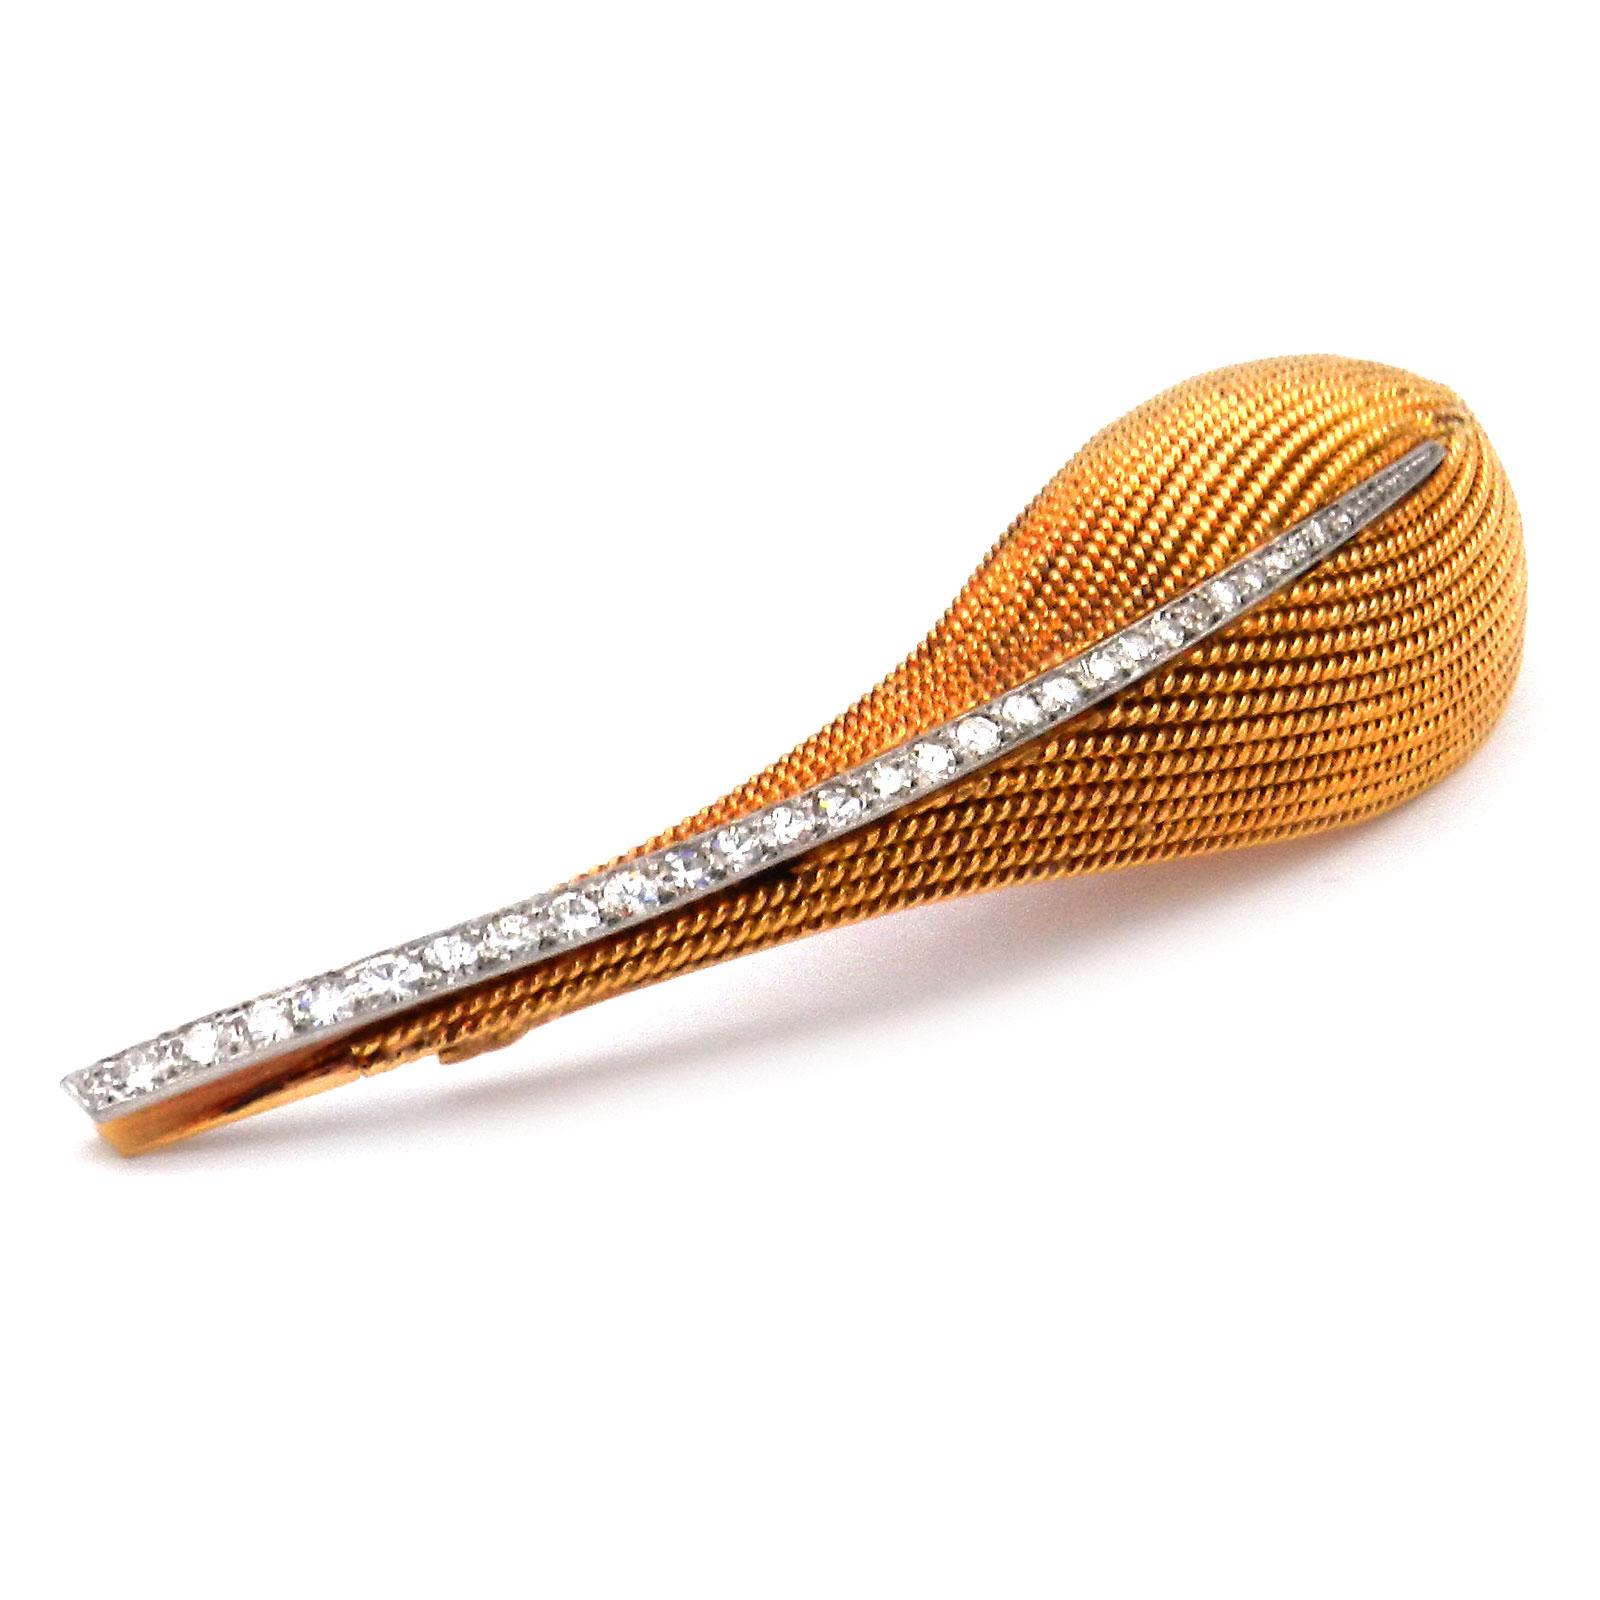 Boucheron Retro Diamond Leaf 18K Gold Brosche um 1945

Diese klassisch elegante und sehr repräsentative Diamantbrosche wurde um 1945 von dem Pariser Luxusjuwelier Boucheron entworfen. Die Brosche hat die Form eines gerollten Kokosnussblattes und ist